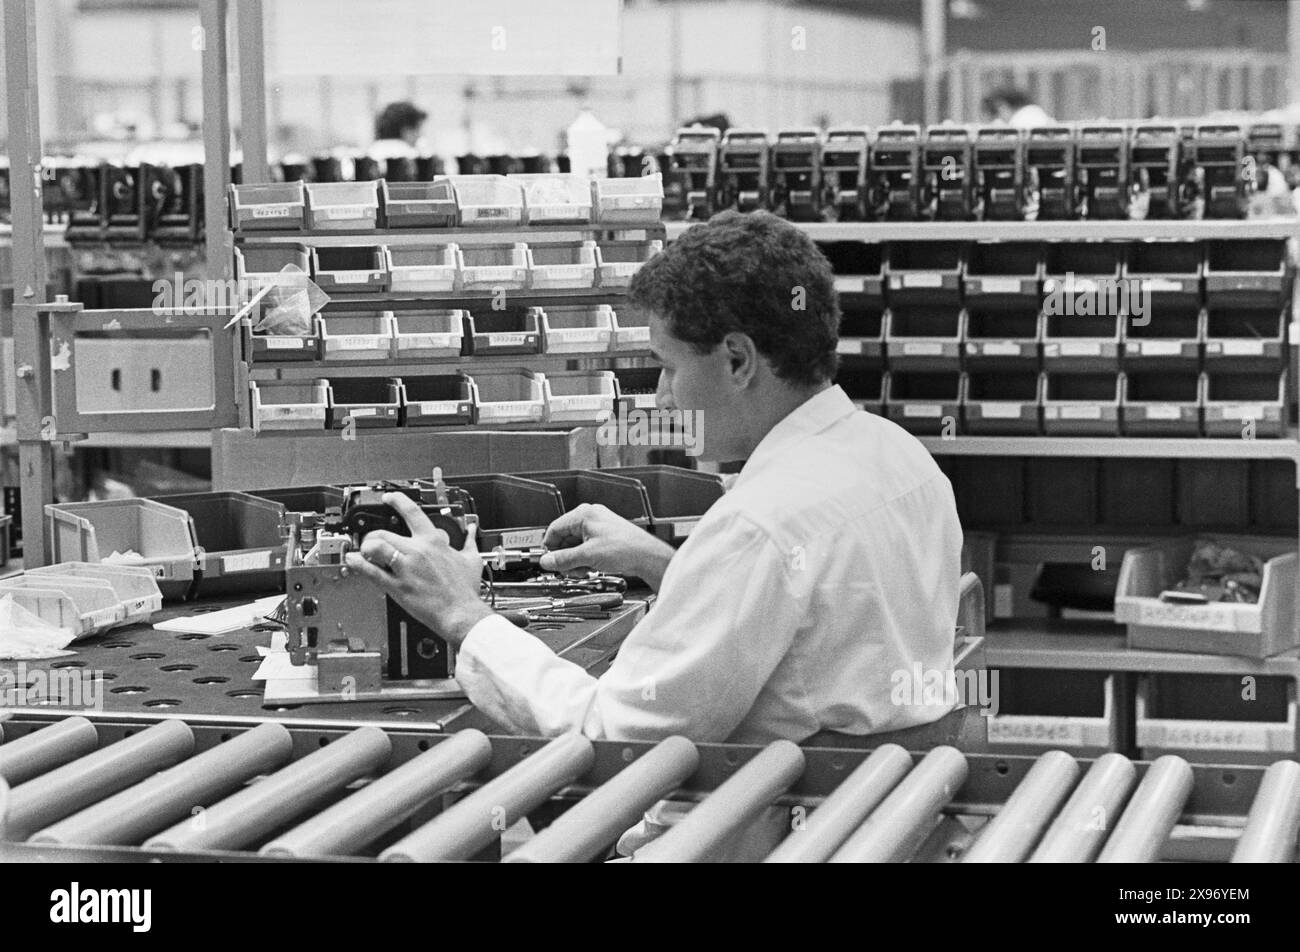 - Stabilimento IBM di Santa Palomba (Roma), giugno 1984   - IBM plant in Santa Palomba (Rome), June 1984 Stock Photo